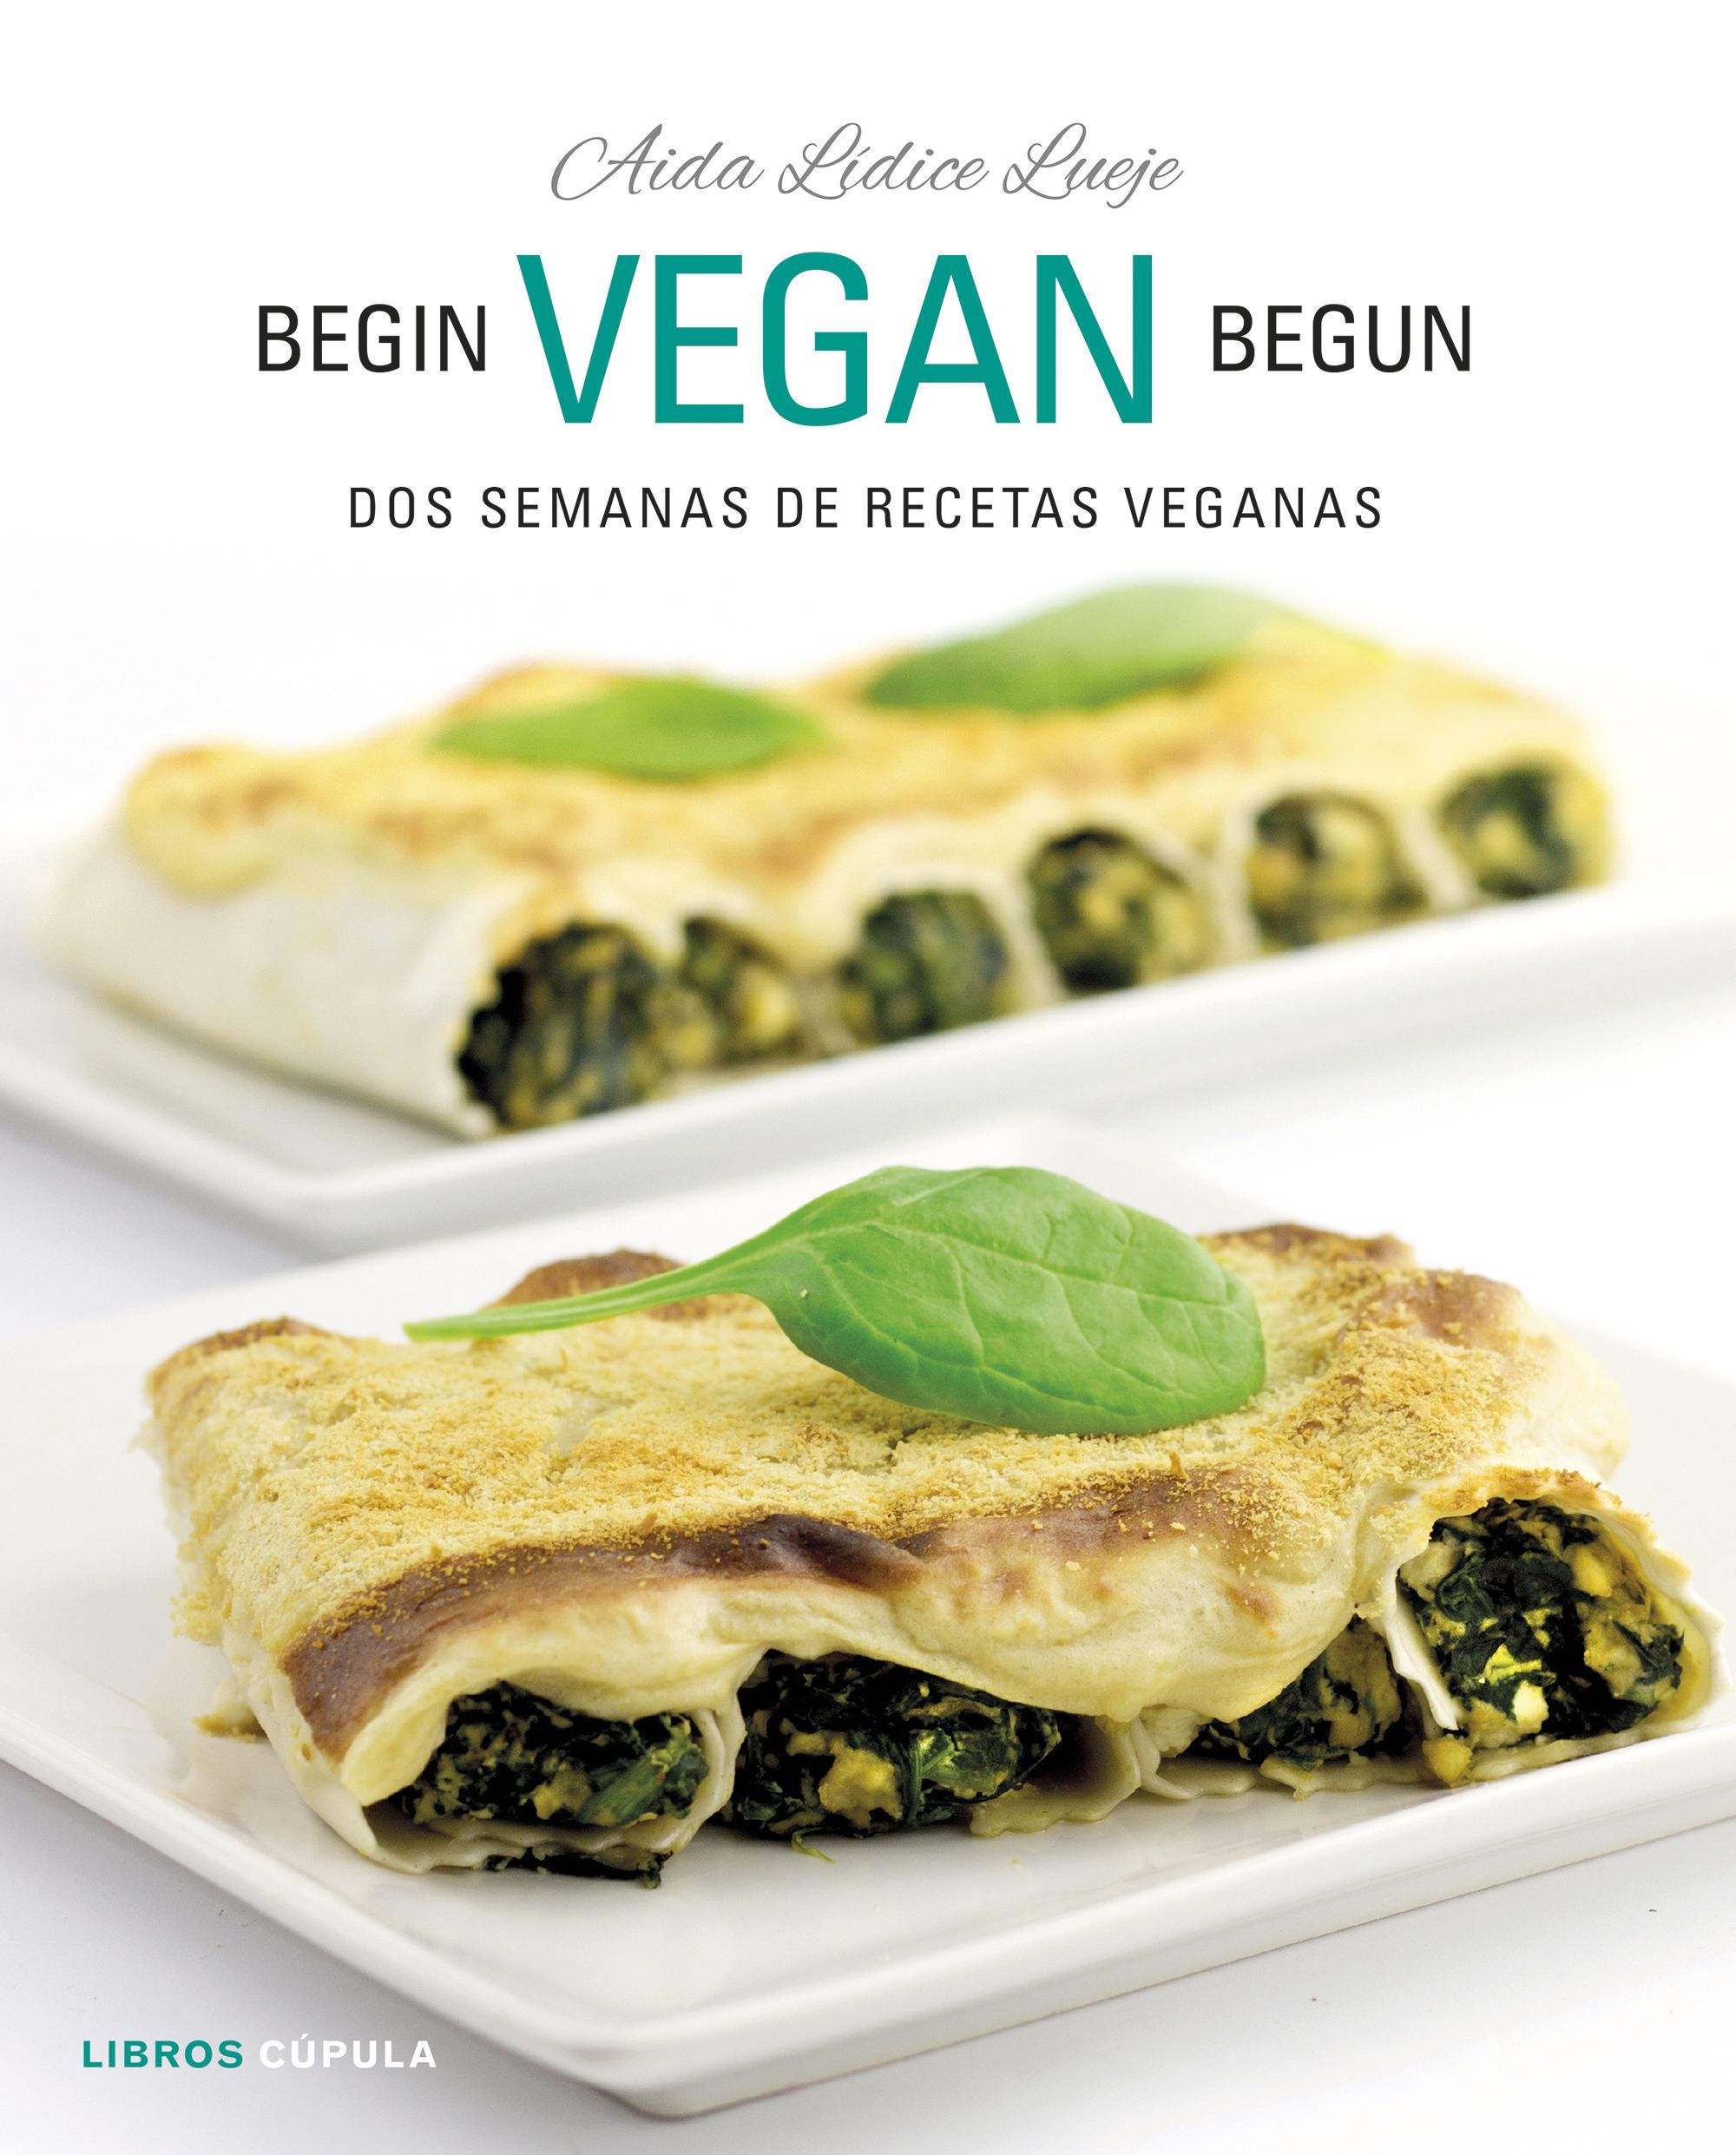 <em>Begin, Vegan, Begun. Dos semanas de recetas veganas</em>, de Aida Lídice Lueje (Ed. Libros Cúpula)